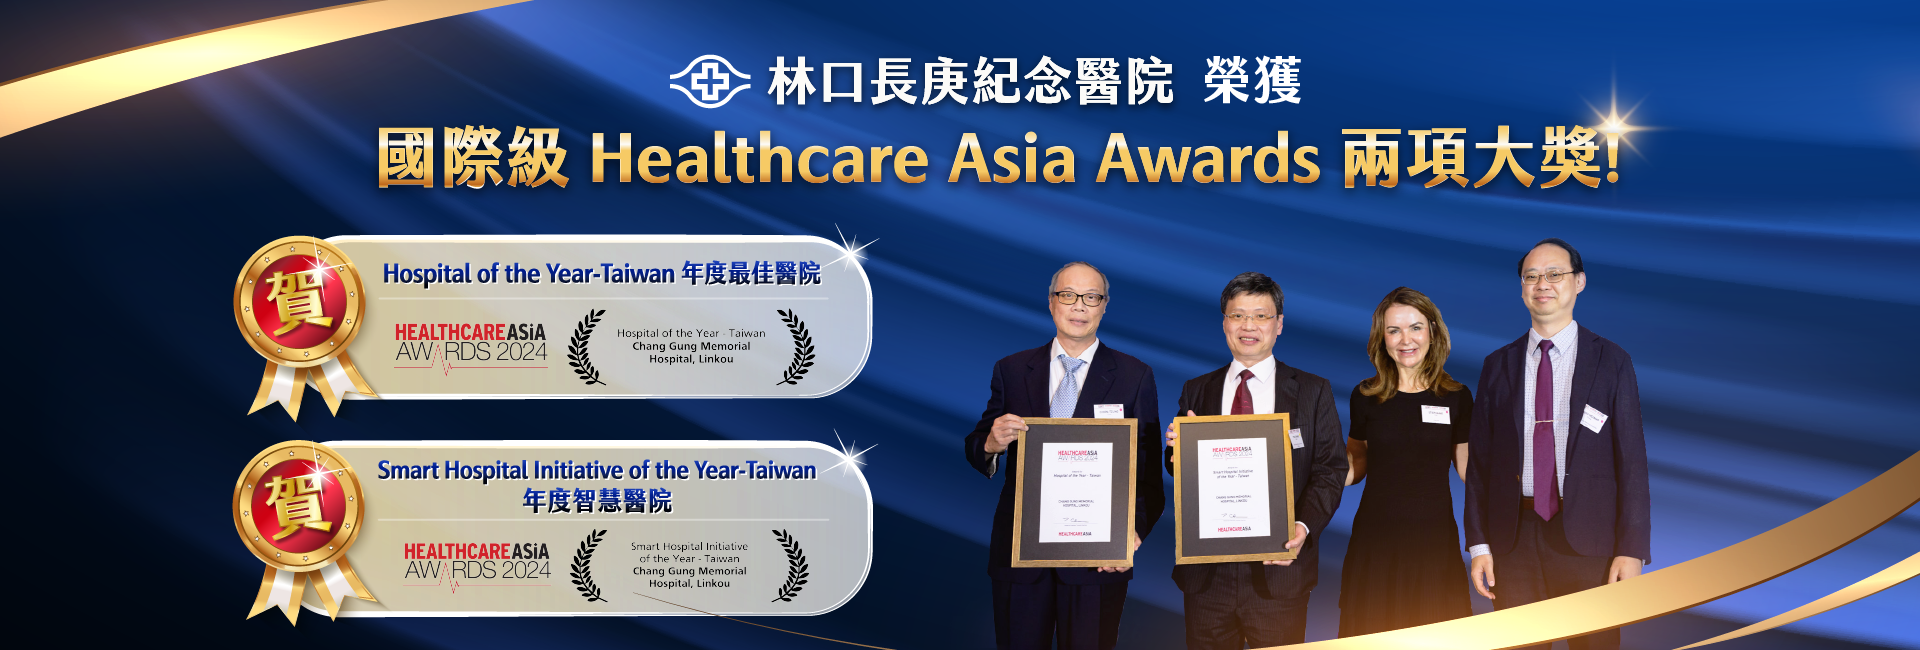 林口Healthcare Asia Awards